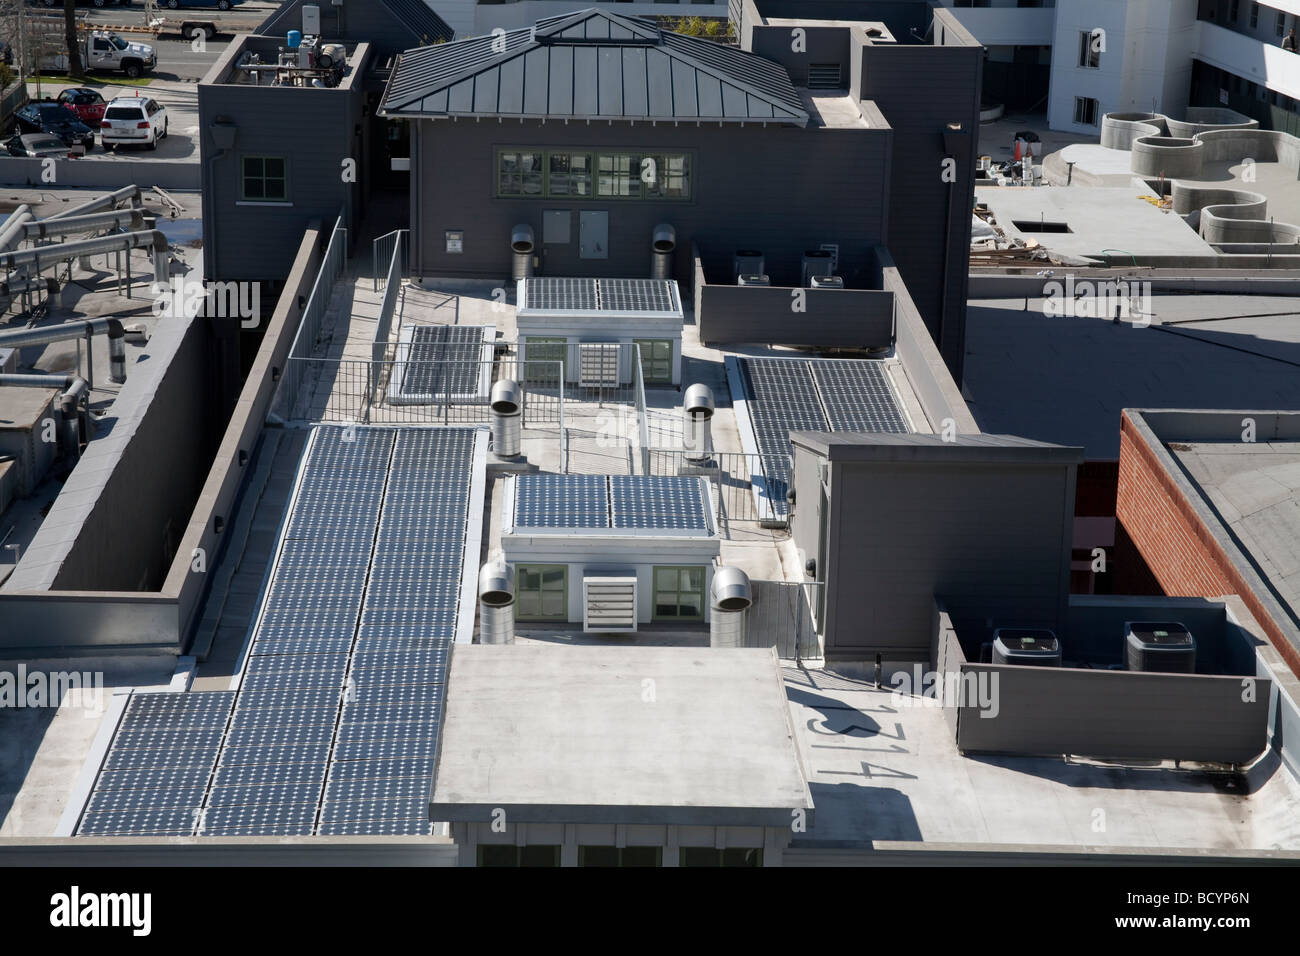 Pannelli solari fotovoltaici sul tetto delle risorse naturali consiglio di difesa), Santa Monica, California, Stati Uniti d'America Foto Stock